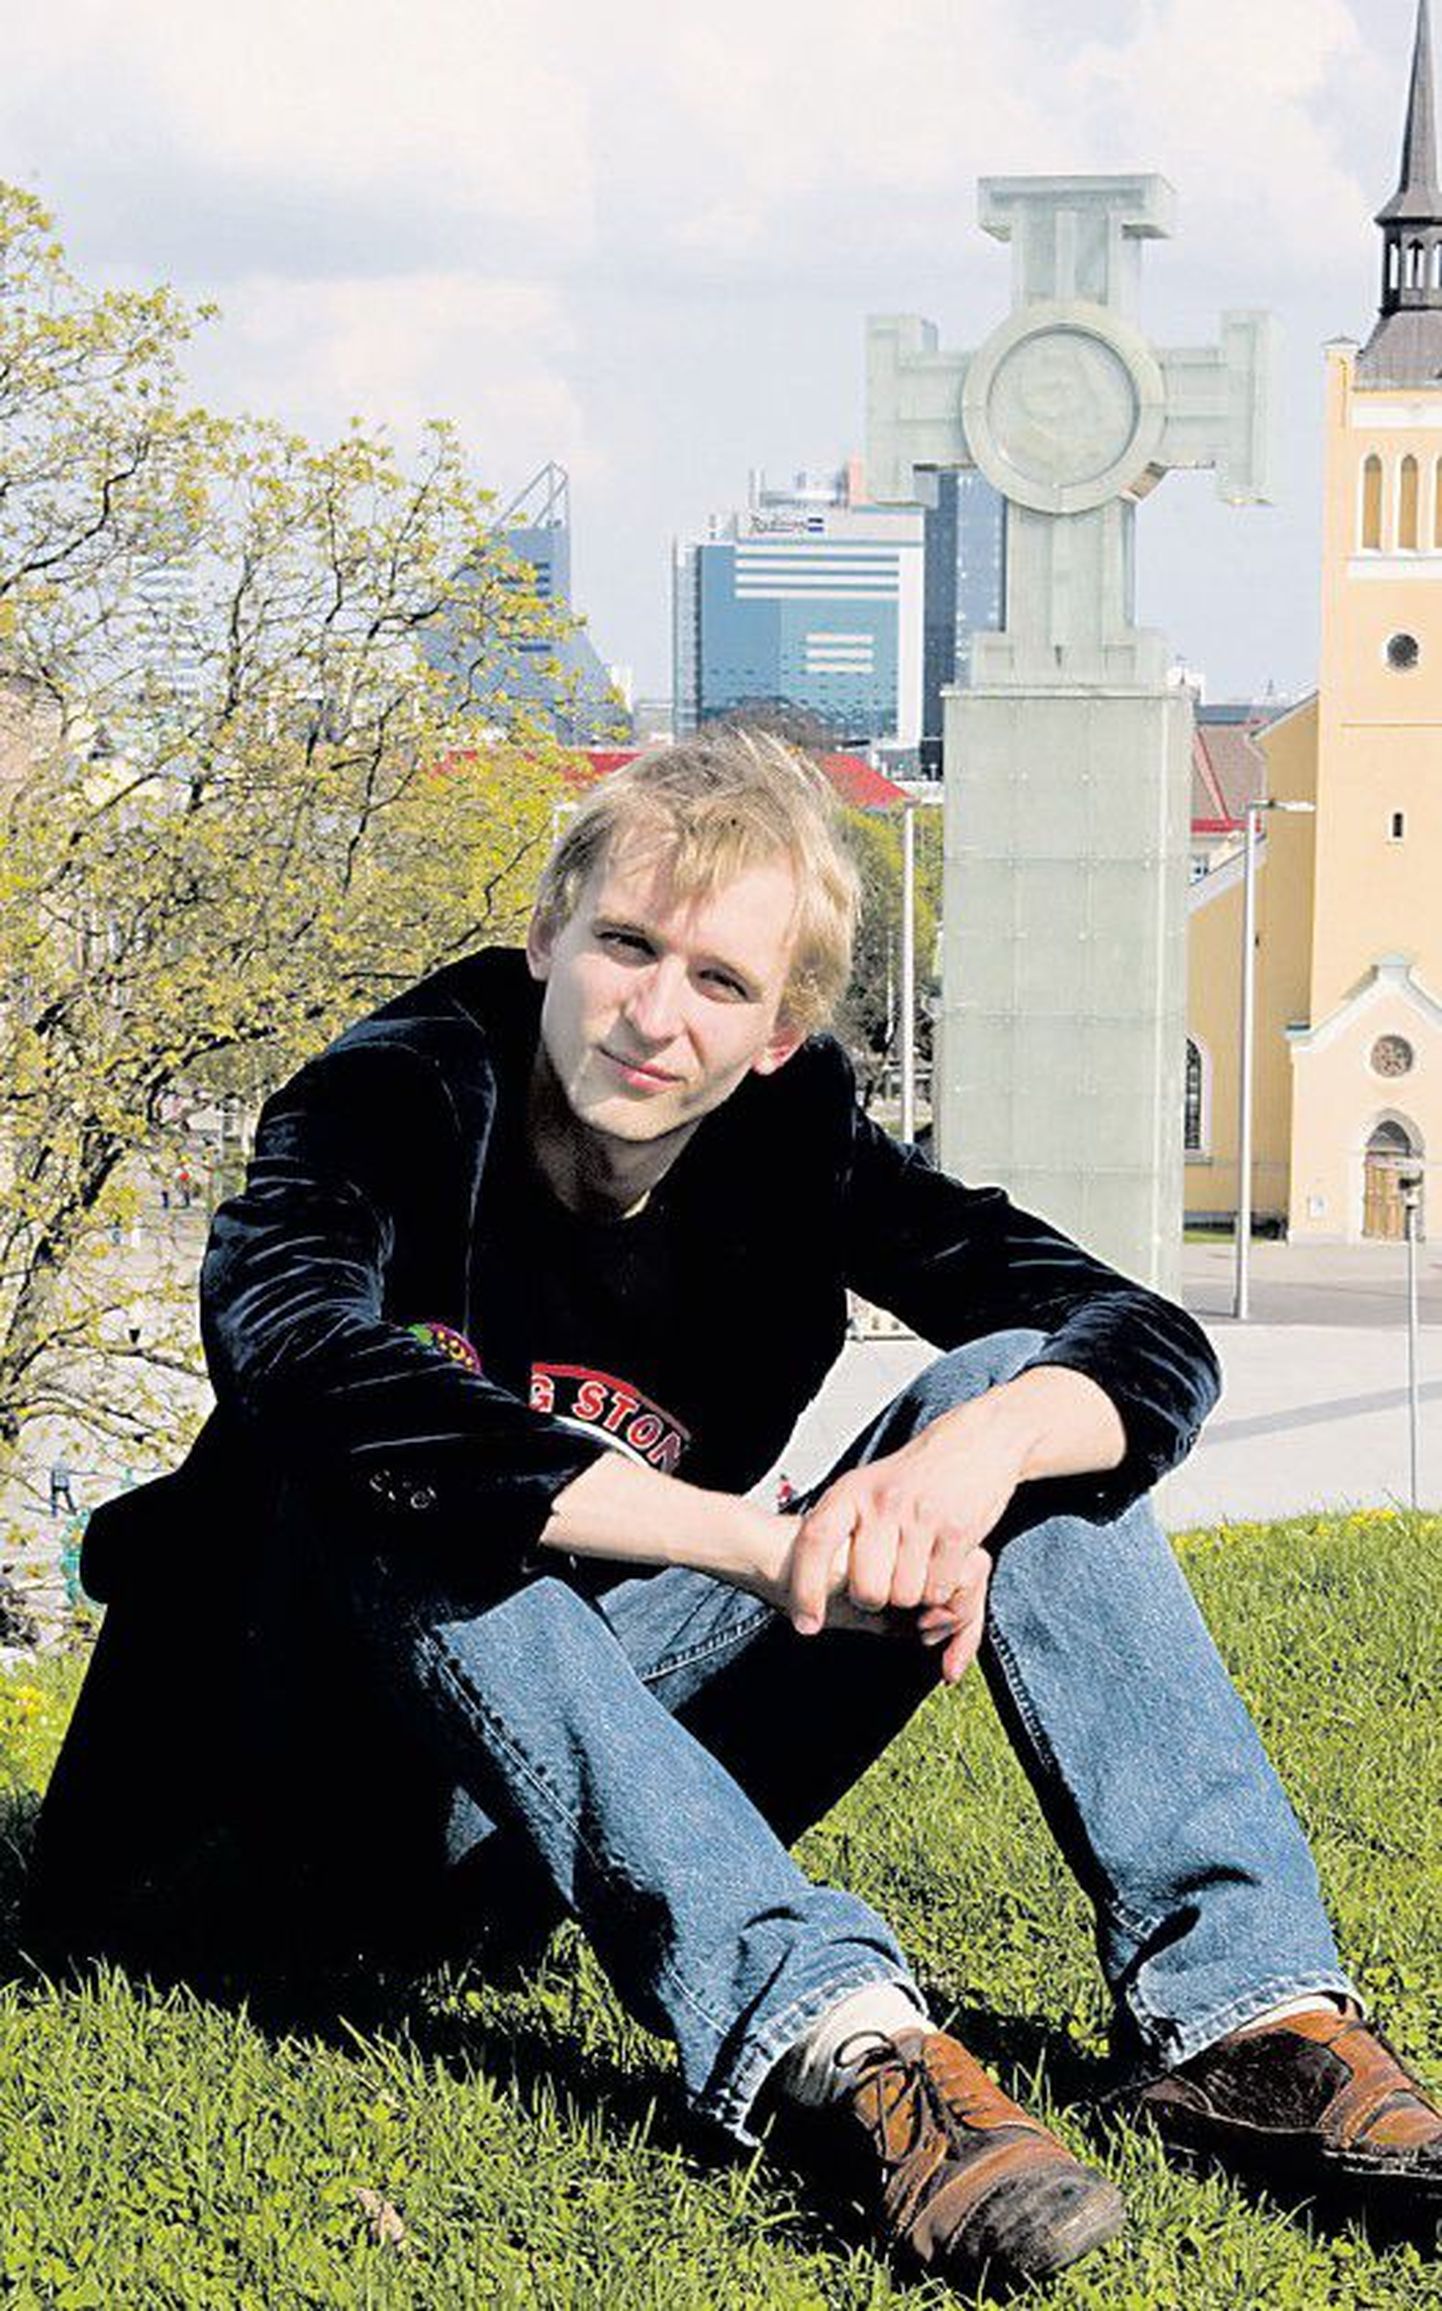 Робин Юхкенталь выступит за Эстонию на международном конкурсе песни в составе ансамбля Malcolm Lincoln с песней Siren уже во вторник, 25 мая, вечером.